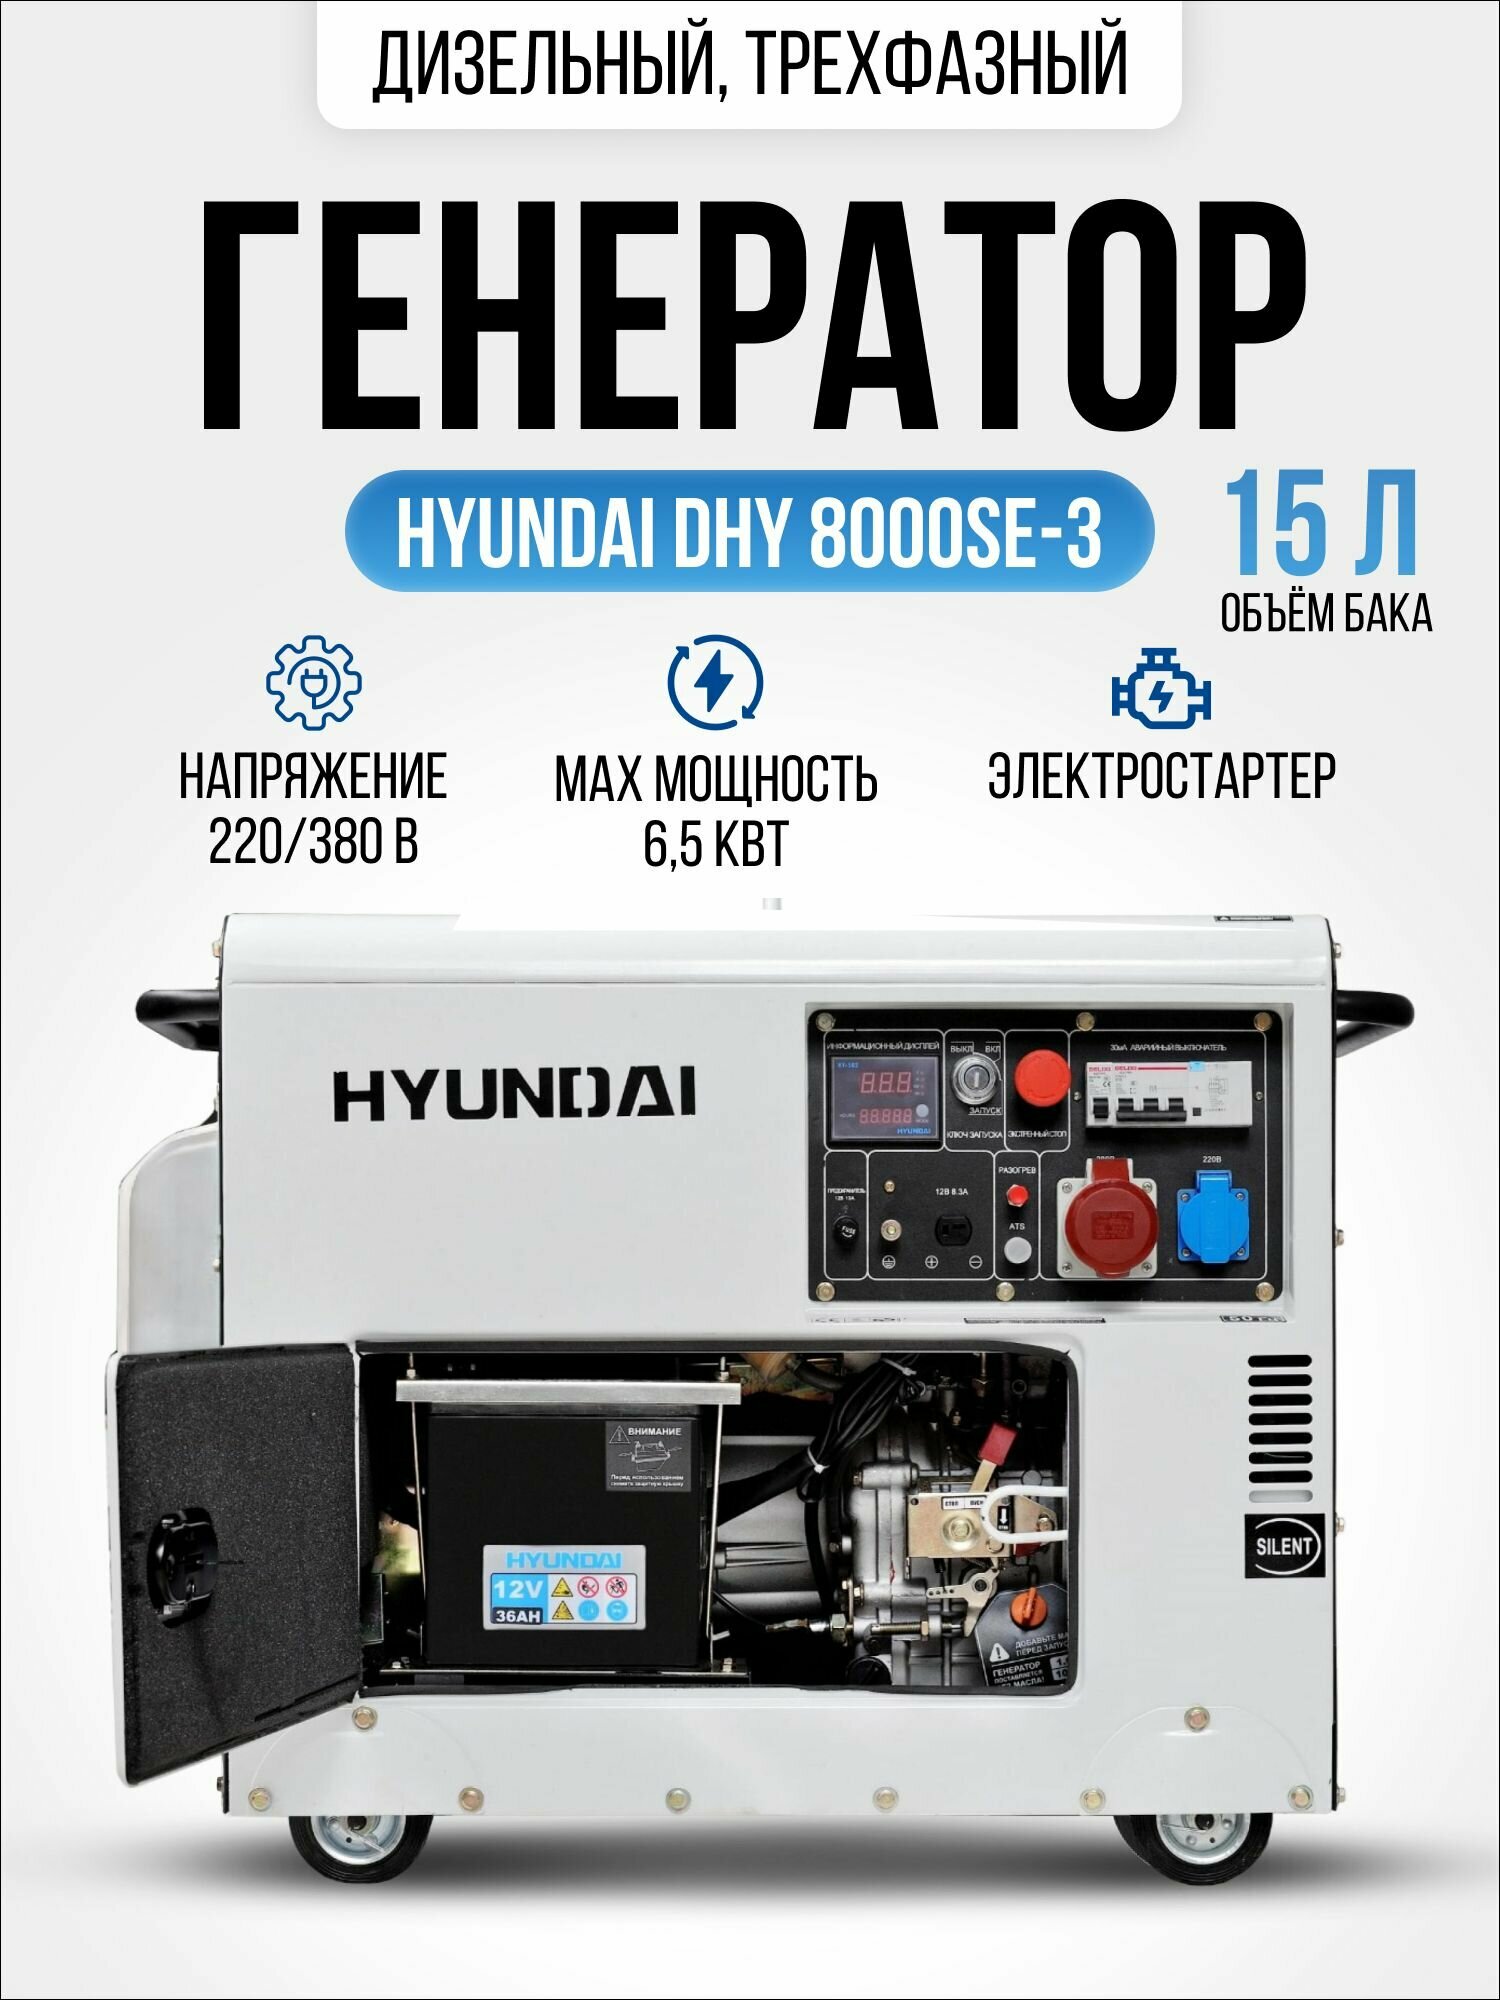 Дизельный генератор Hyundai DHY 8000 SE-3 6,5 кВт, электрогенератор с электро запуском двигателя 156кг